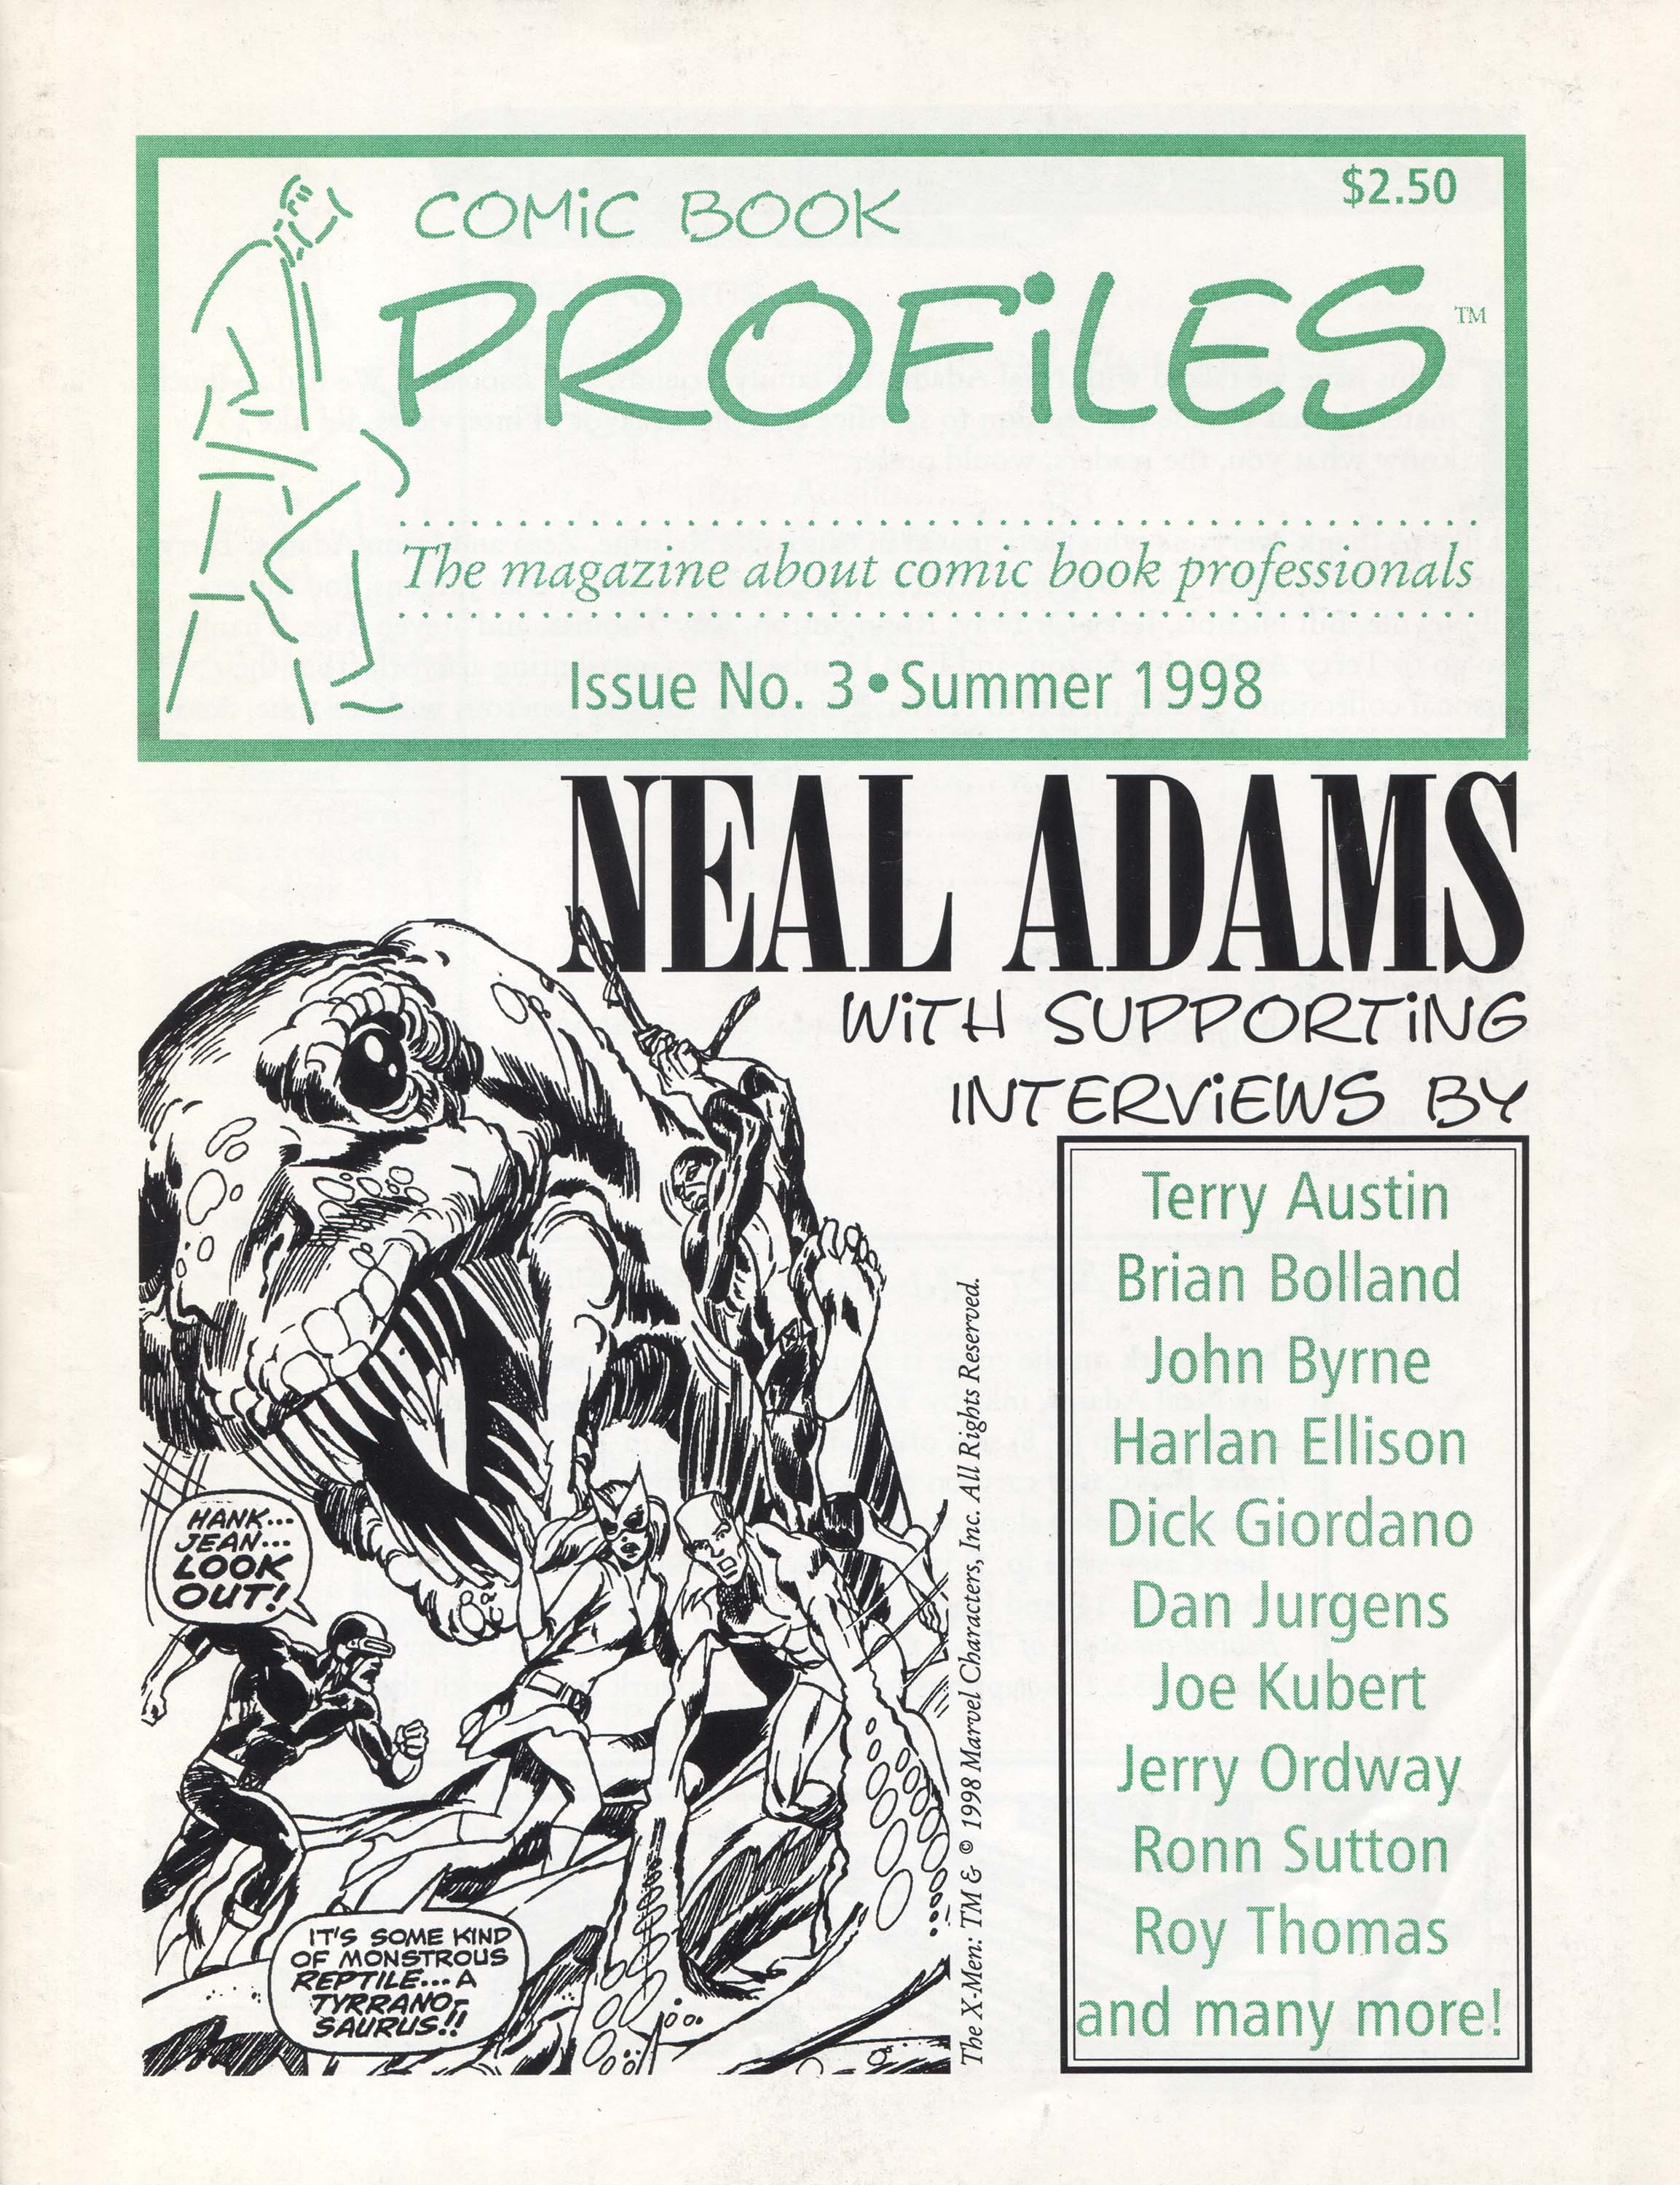 Comic Book Profiles #3, cover